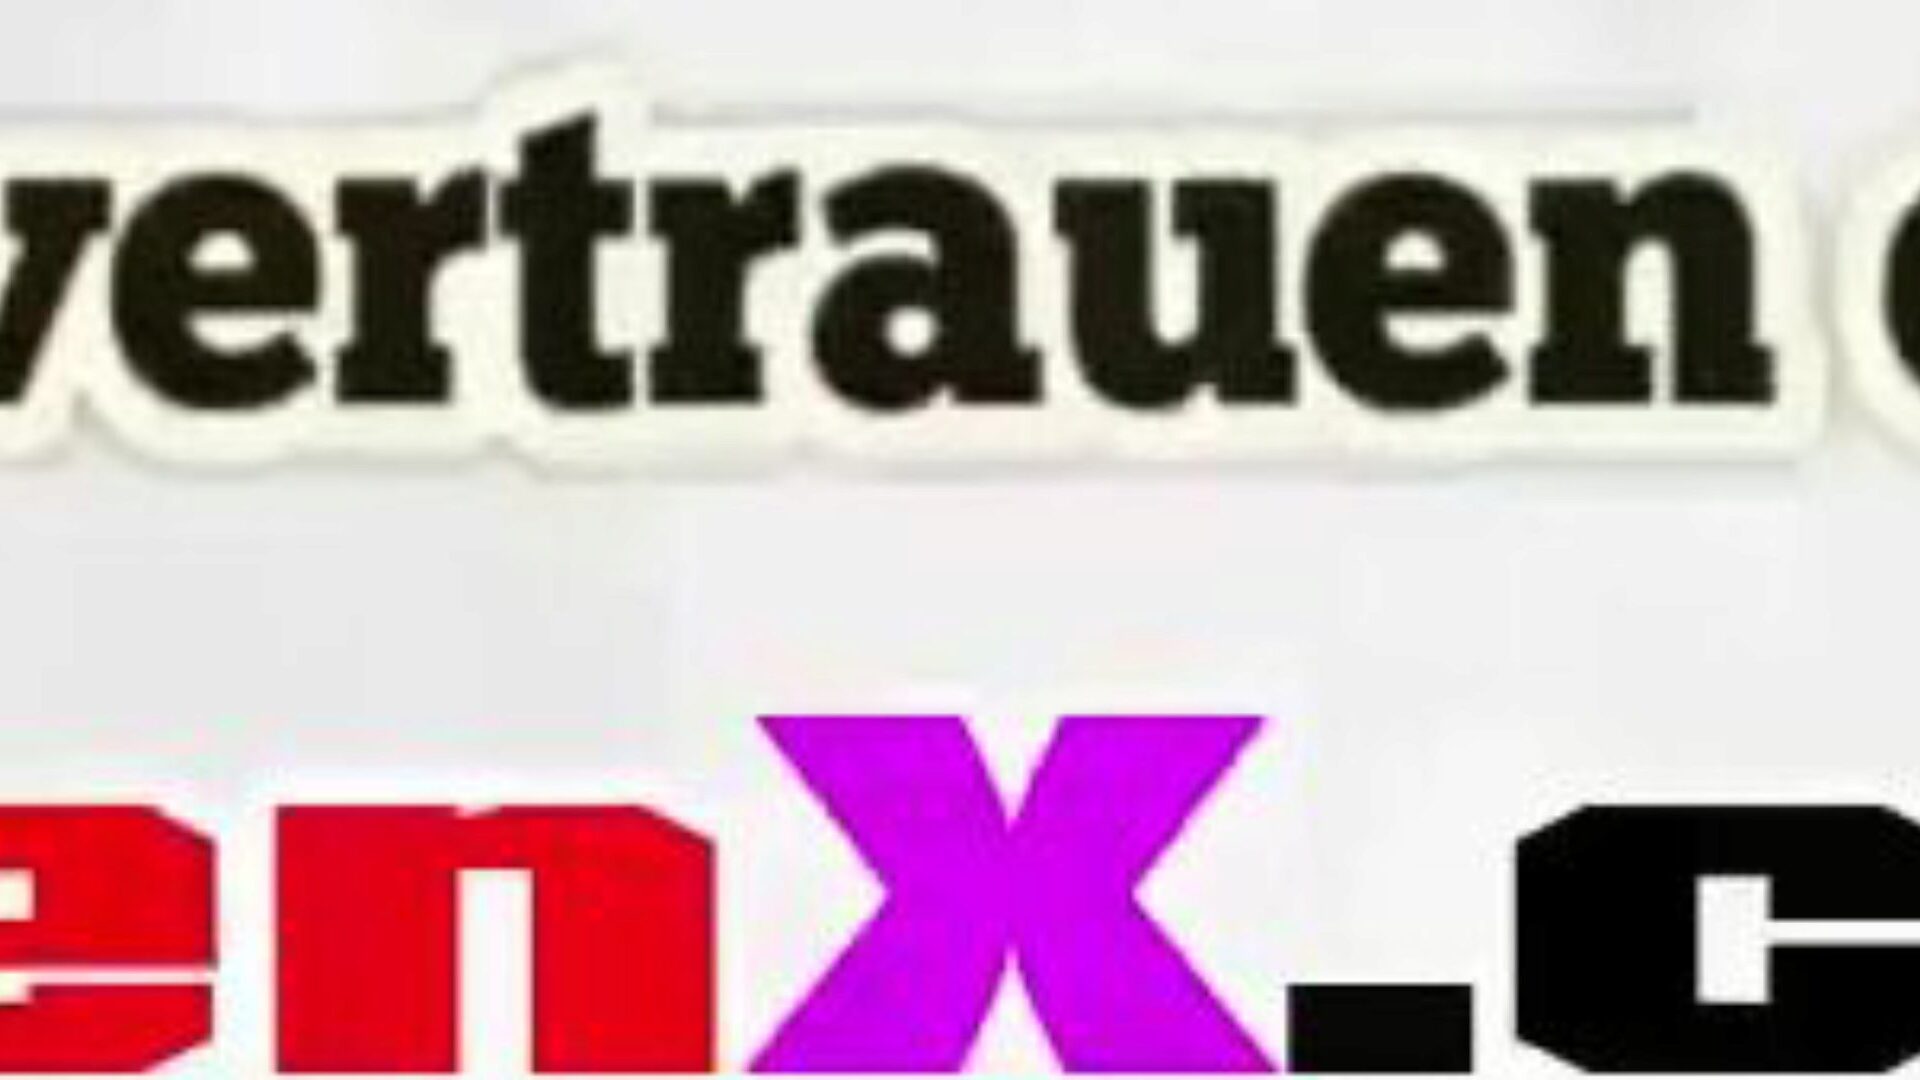 stiefmutter gefickt: free mutter německé hd porno video f5 sledovat stiefmutter gefickt trubka fuckfest video zdarma pro všechny na xhamster, s úžasnou sbírkou německého muttera němčiny a muttera tochter epizody filmové scény HD porno